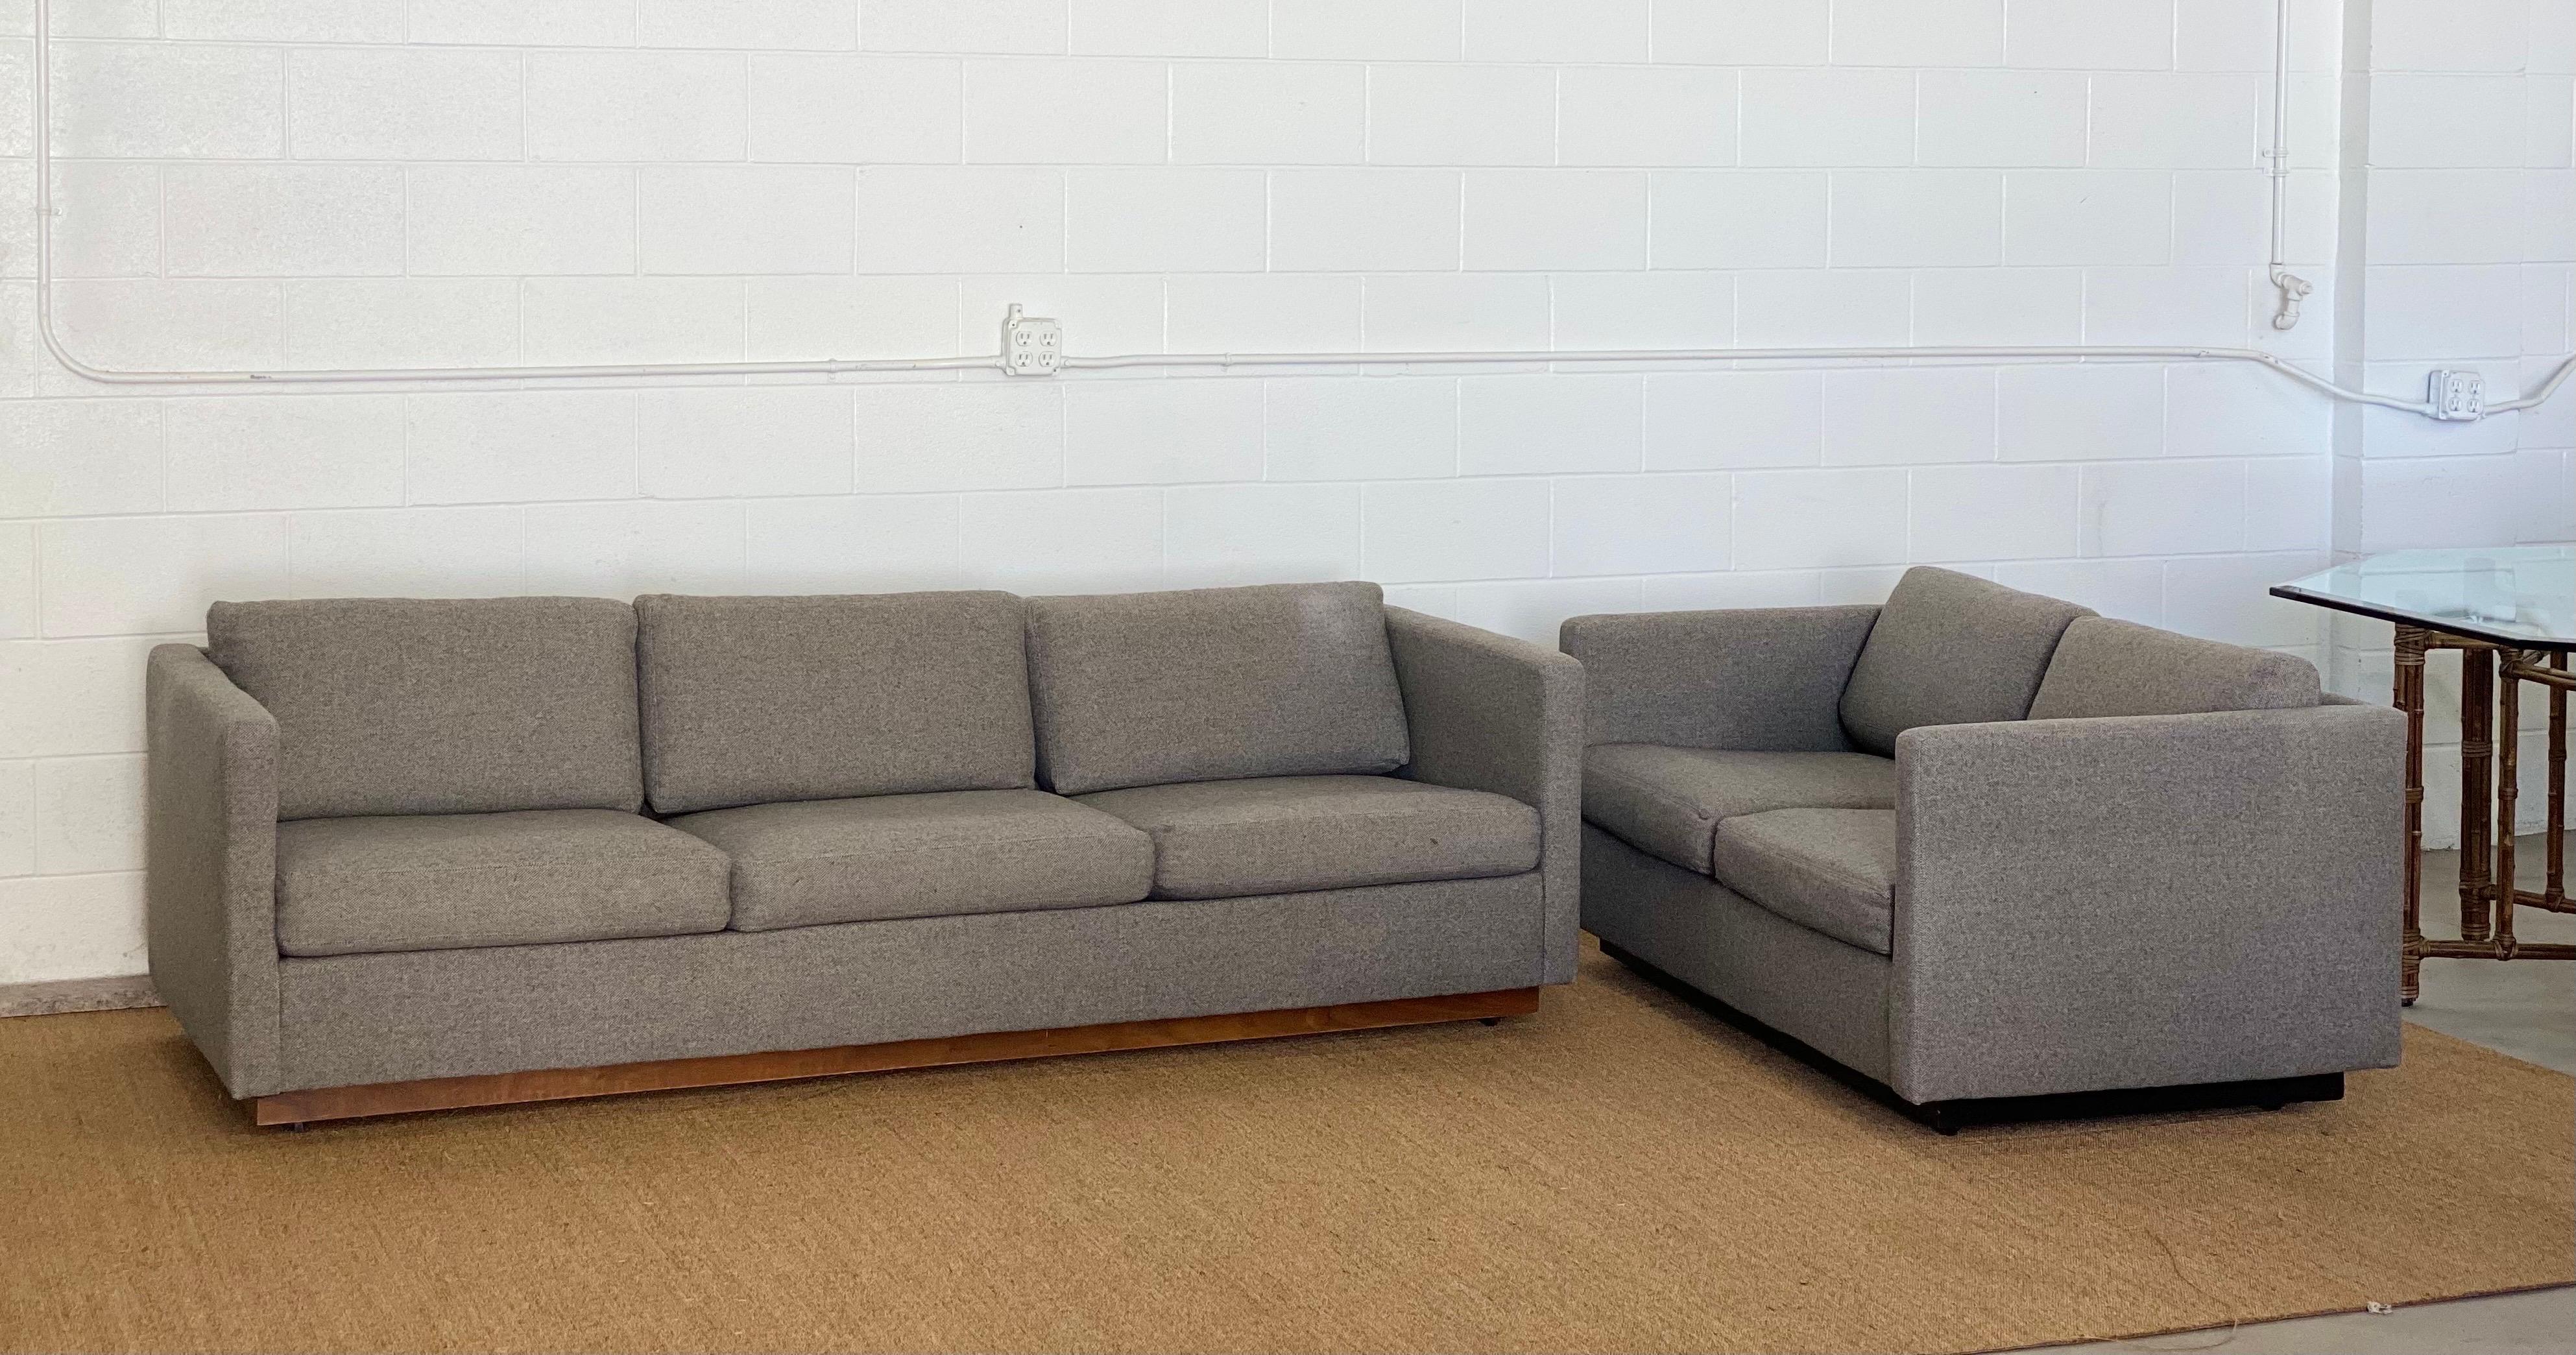 Wir freuen uns sehr, ein schickes Smoking-Sofa des amerikanischen Designers Milo Baughman für Thayer Coggin aus den 1980er Jahren anbieten zu können. Dieses Sofa hat einen umlaufenden Rahmen und lose Kissen, die mit einem grauen Stoff gepolstert